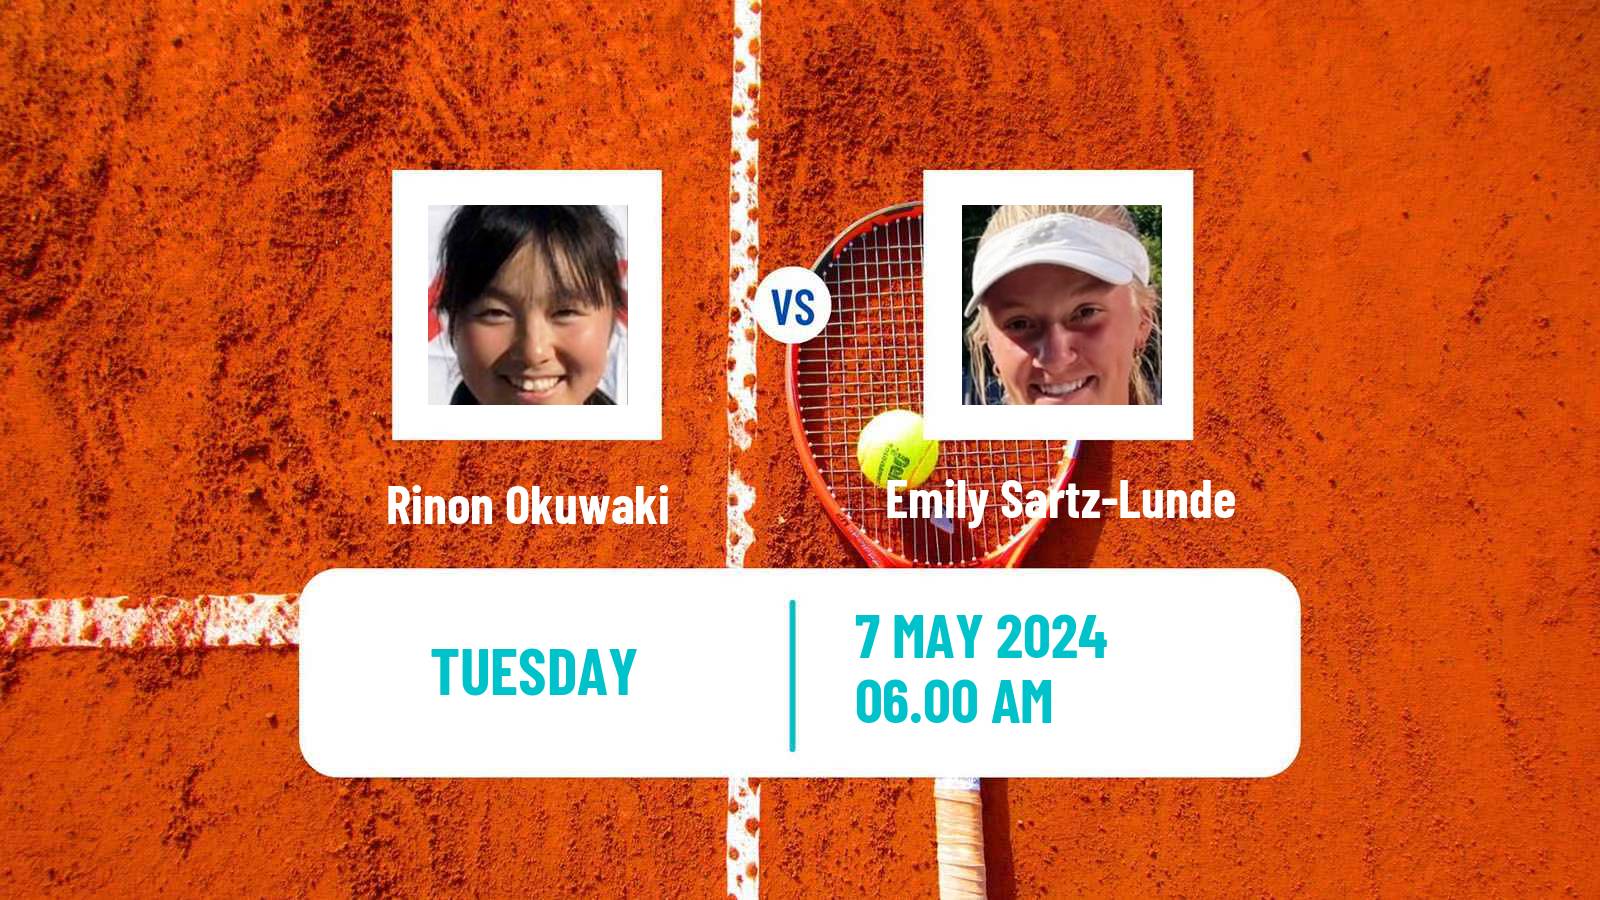 Tennis ITF W15 Antalya 13 Women Rinon Okuwaki - Emily Sartz-Lunde